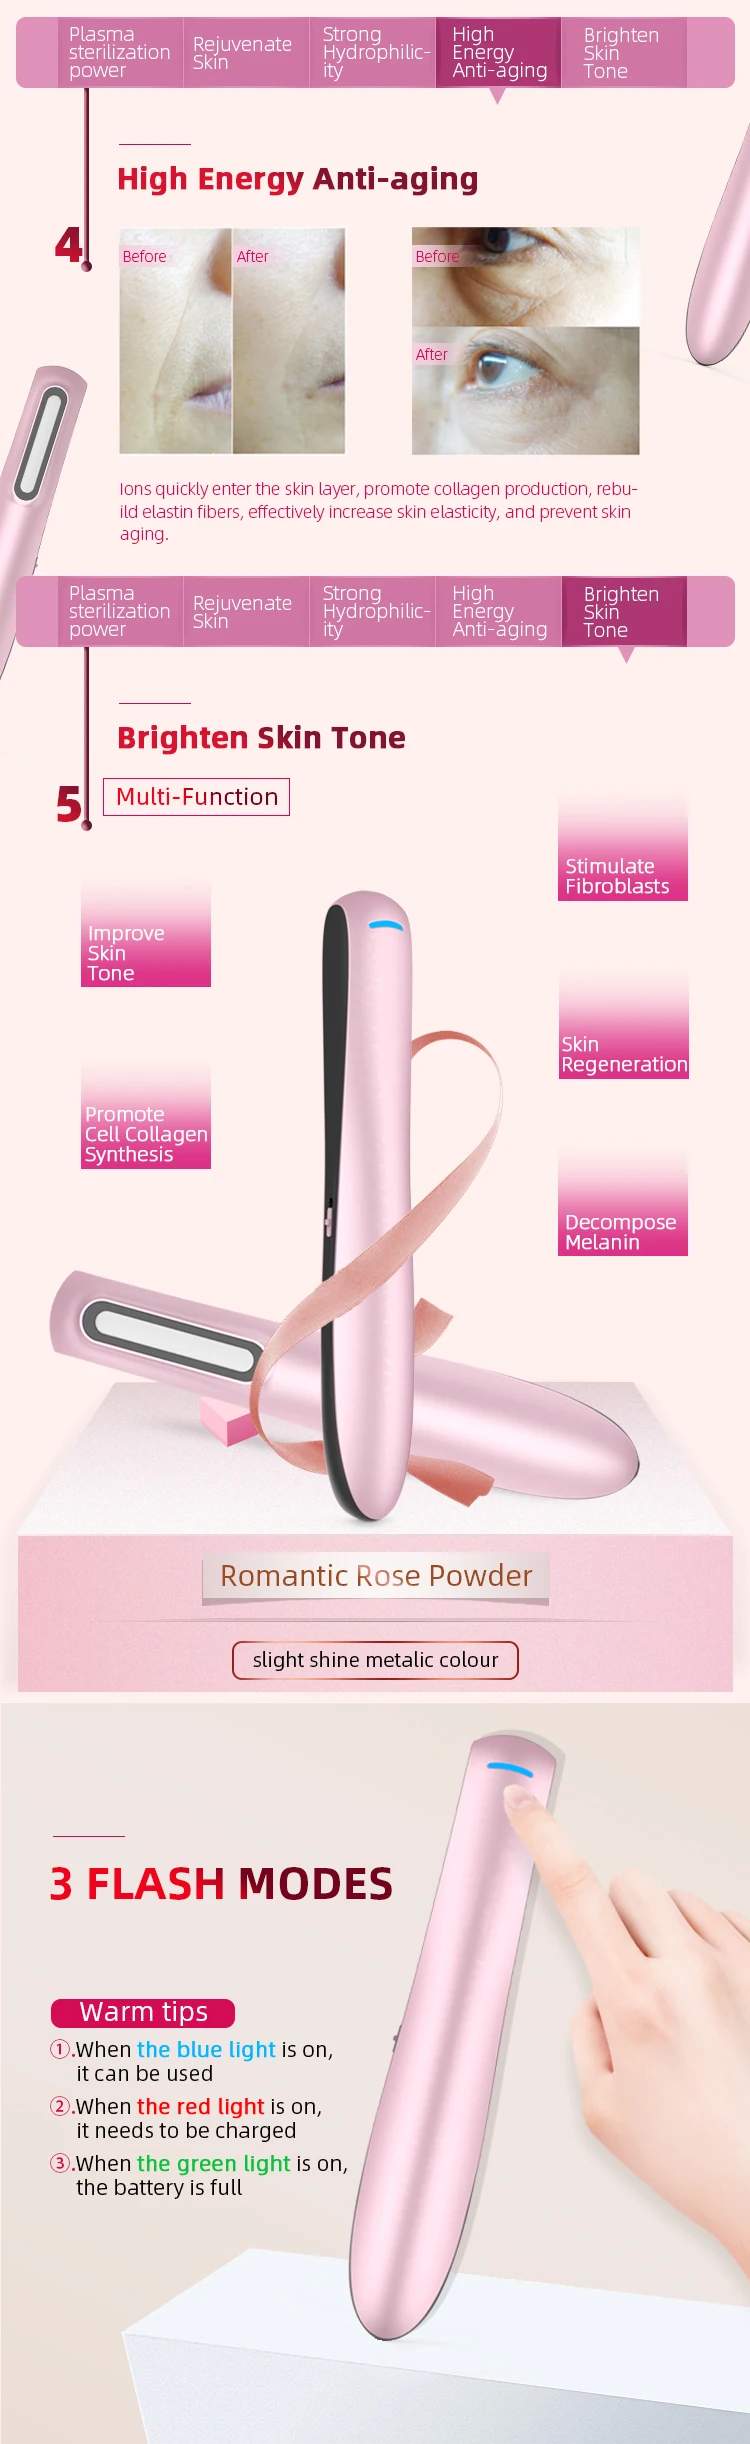 2019 Beauty Salon Equipment Home Facial Care Acne Patches Plasma Plasma Lighter